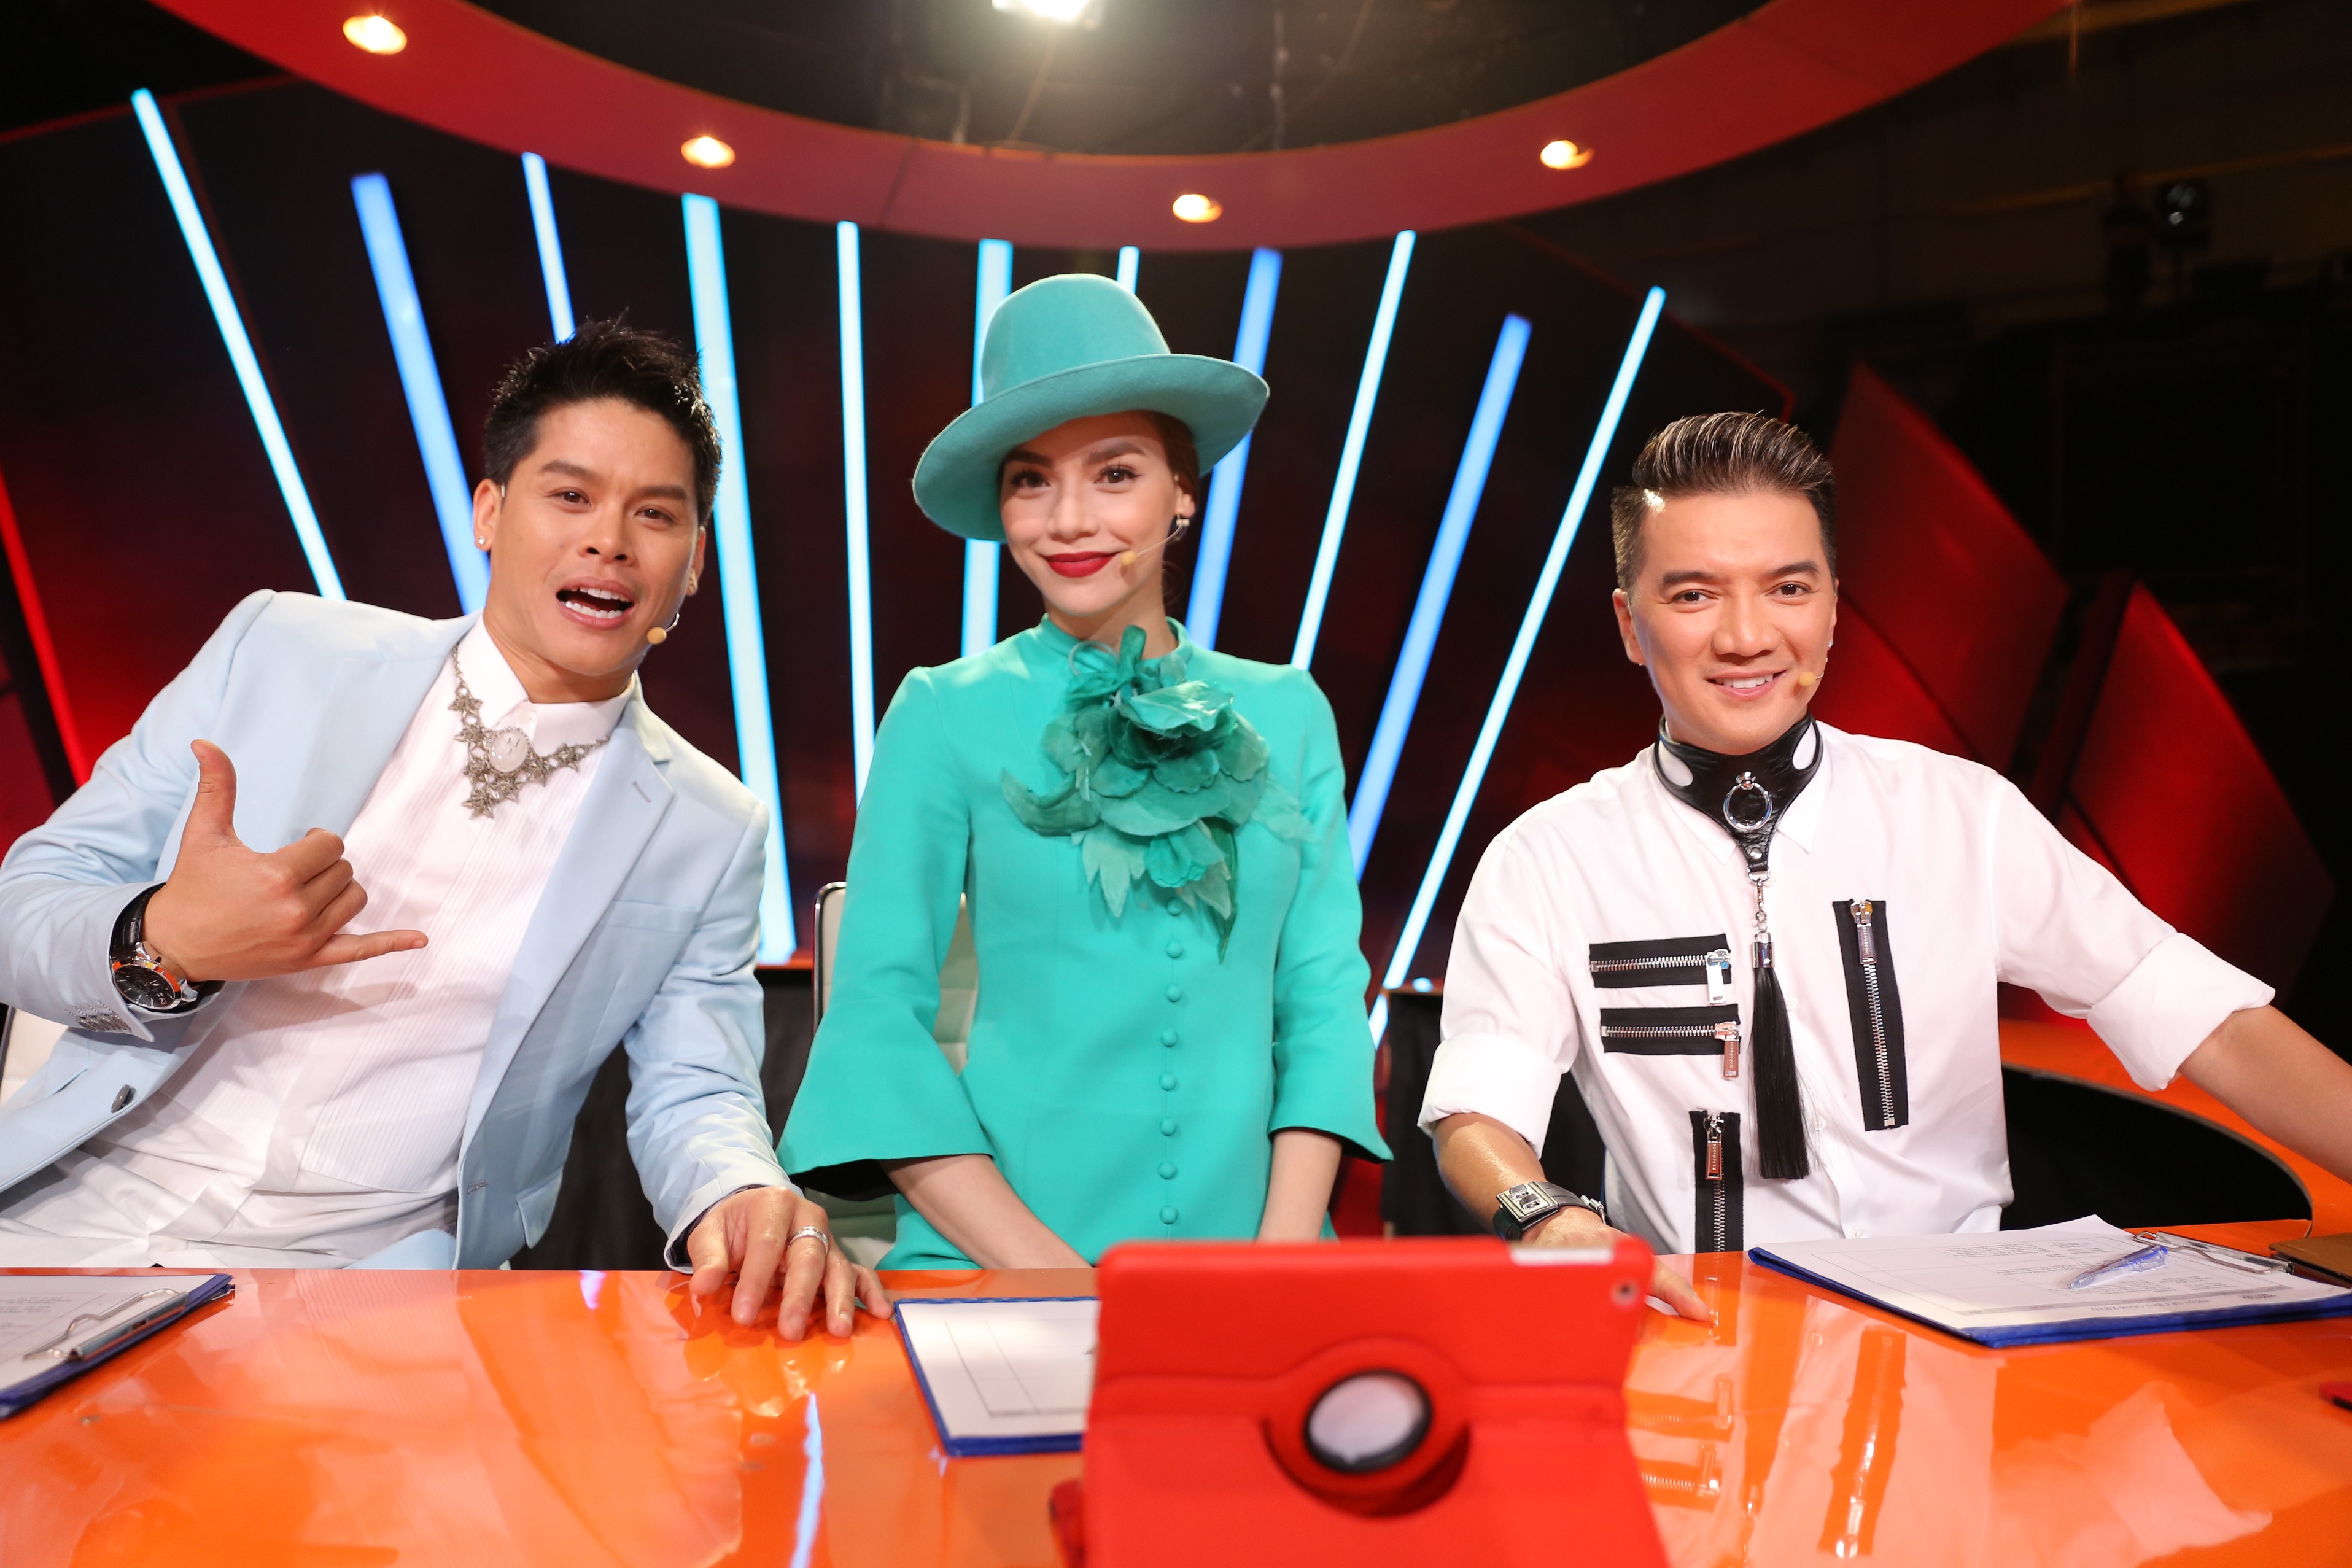 Ca sĩ Đàm Vĩnh Hưng sẽ ngồi ghế ban giám khảo cùng Hồ Ngọc Hà và John Huy Trần